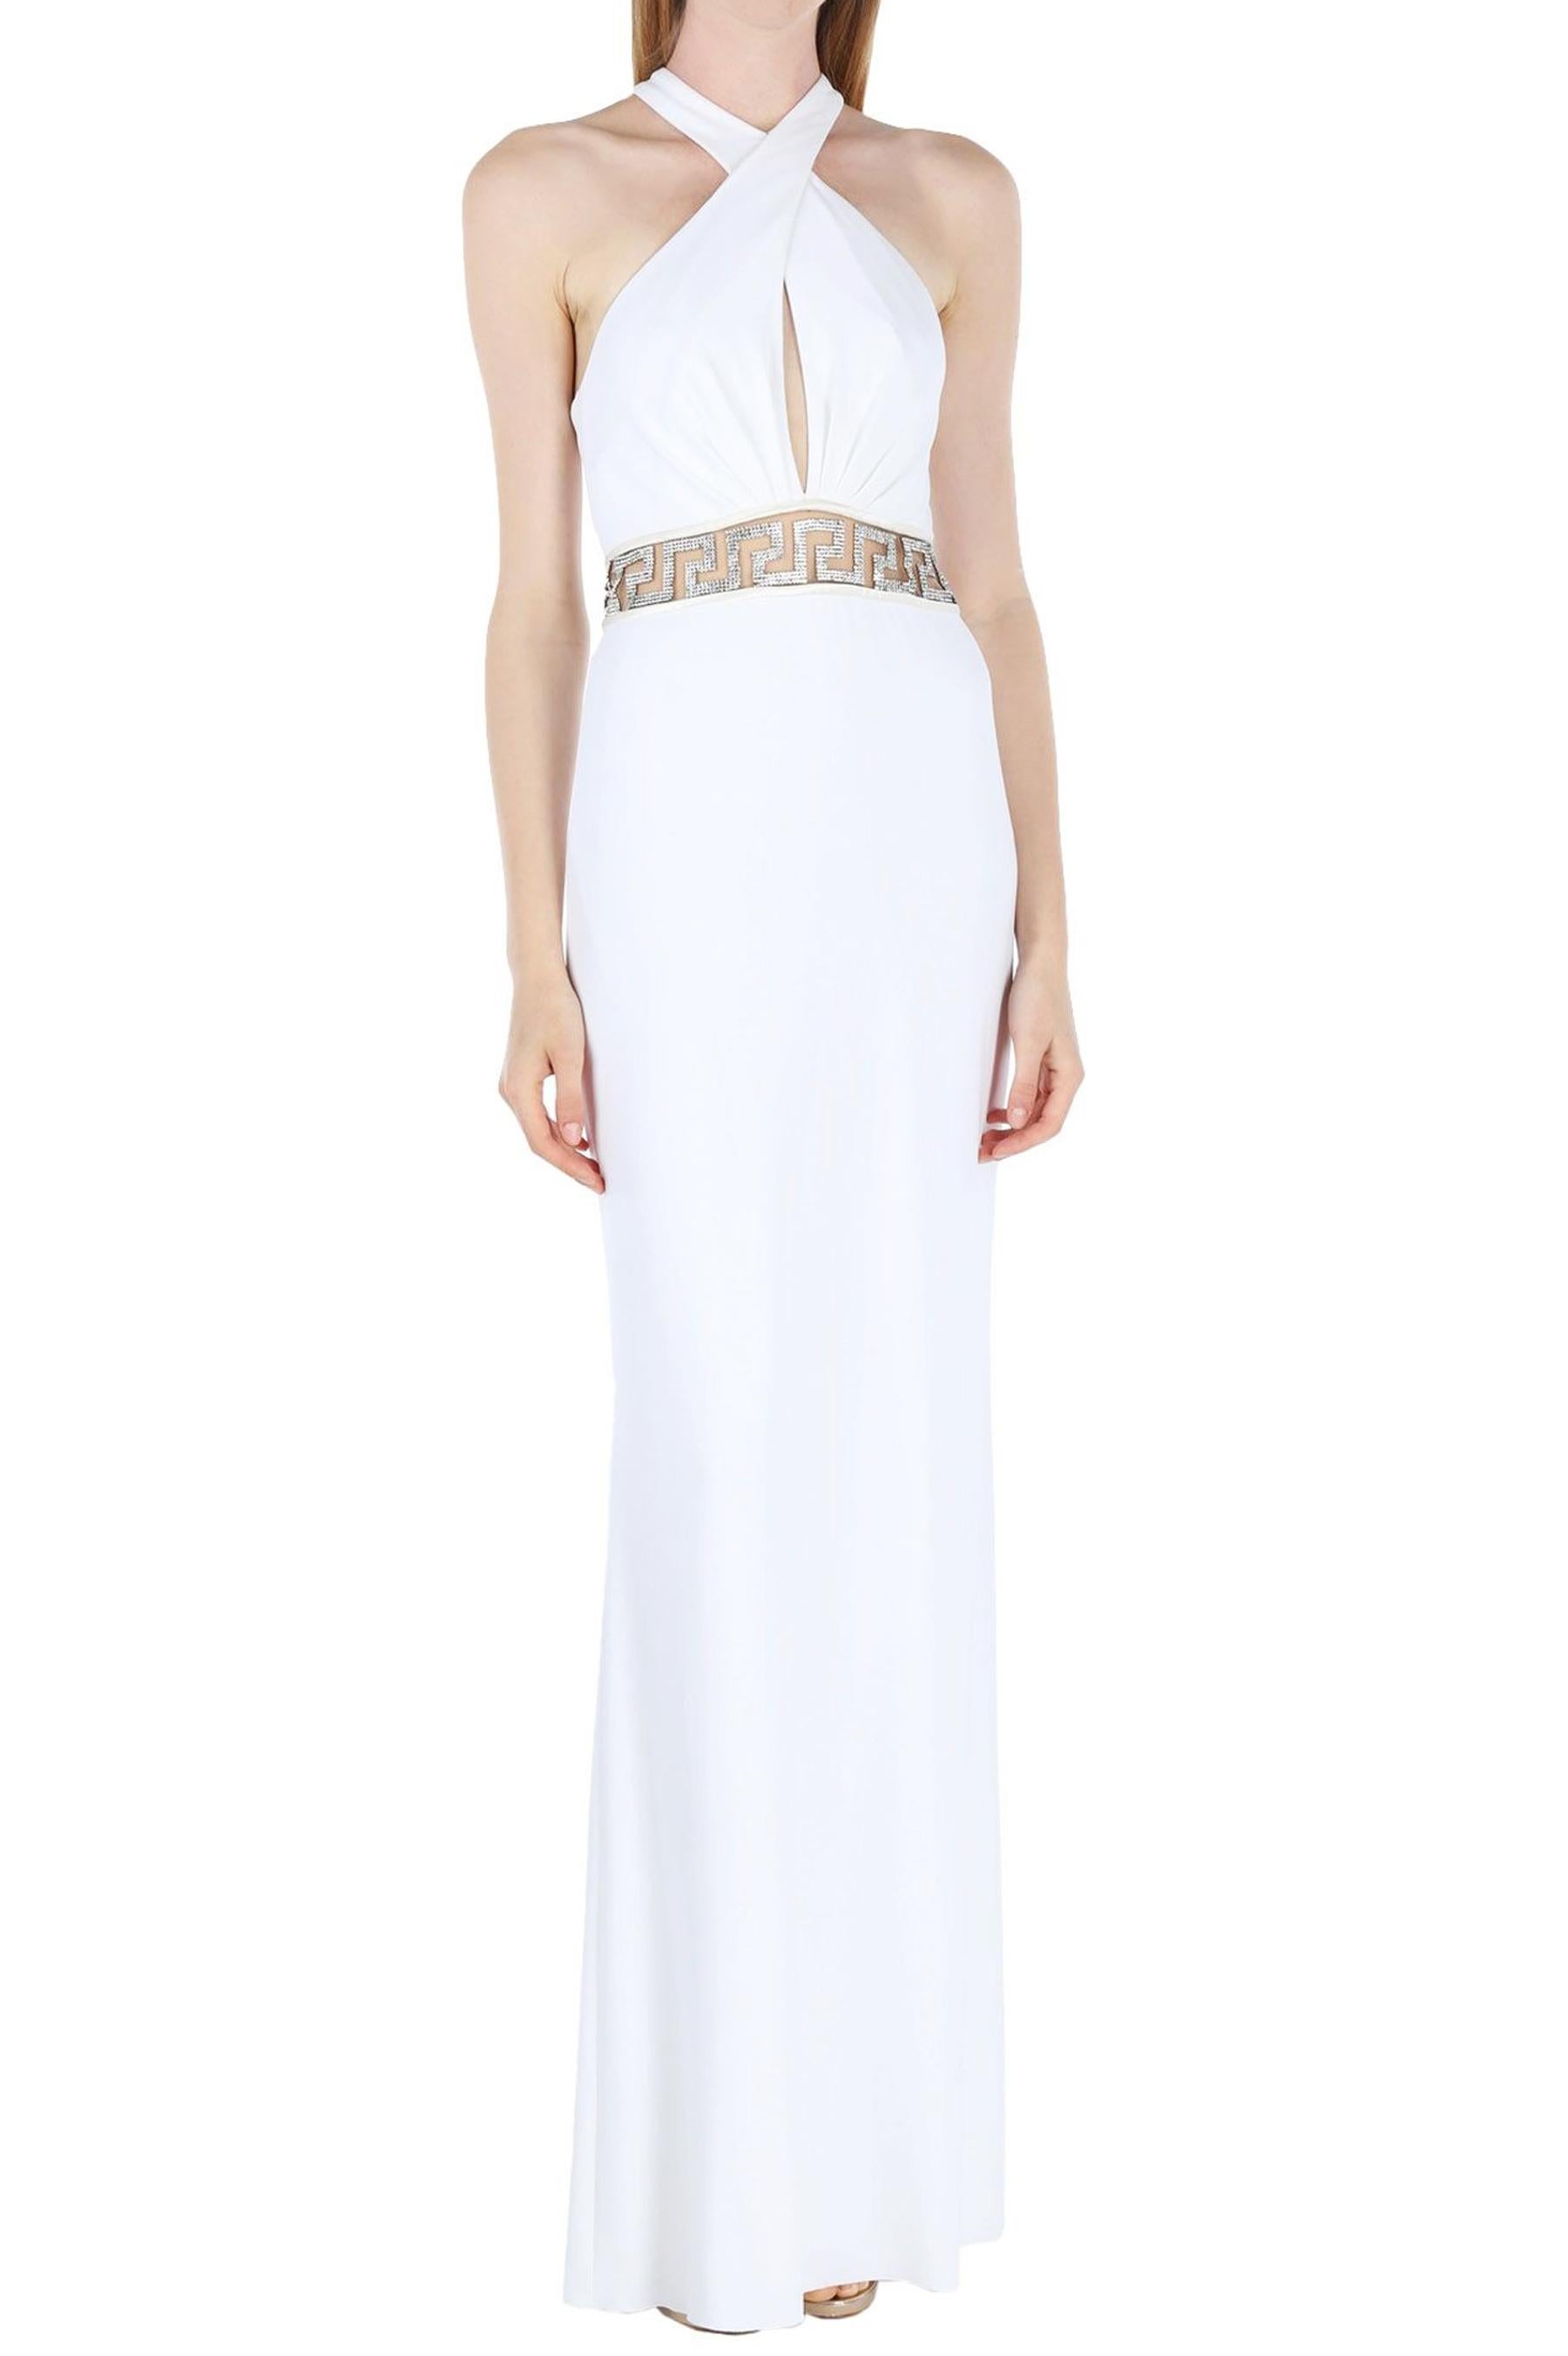 Neu Versace Swarovski-Kristalle Weiß Jersey Kleid Kleid
Designer Größe 42
Weißer Stretch-Jersey, Verzierung mit Swarovski-Kristallen, integriertes Trikotunterteil, hoher Schlitz am Rücken, vollständig gefüttert, Reißverschluss hinten.
Maße: Länge -